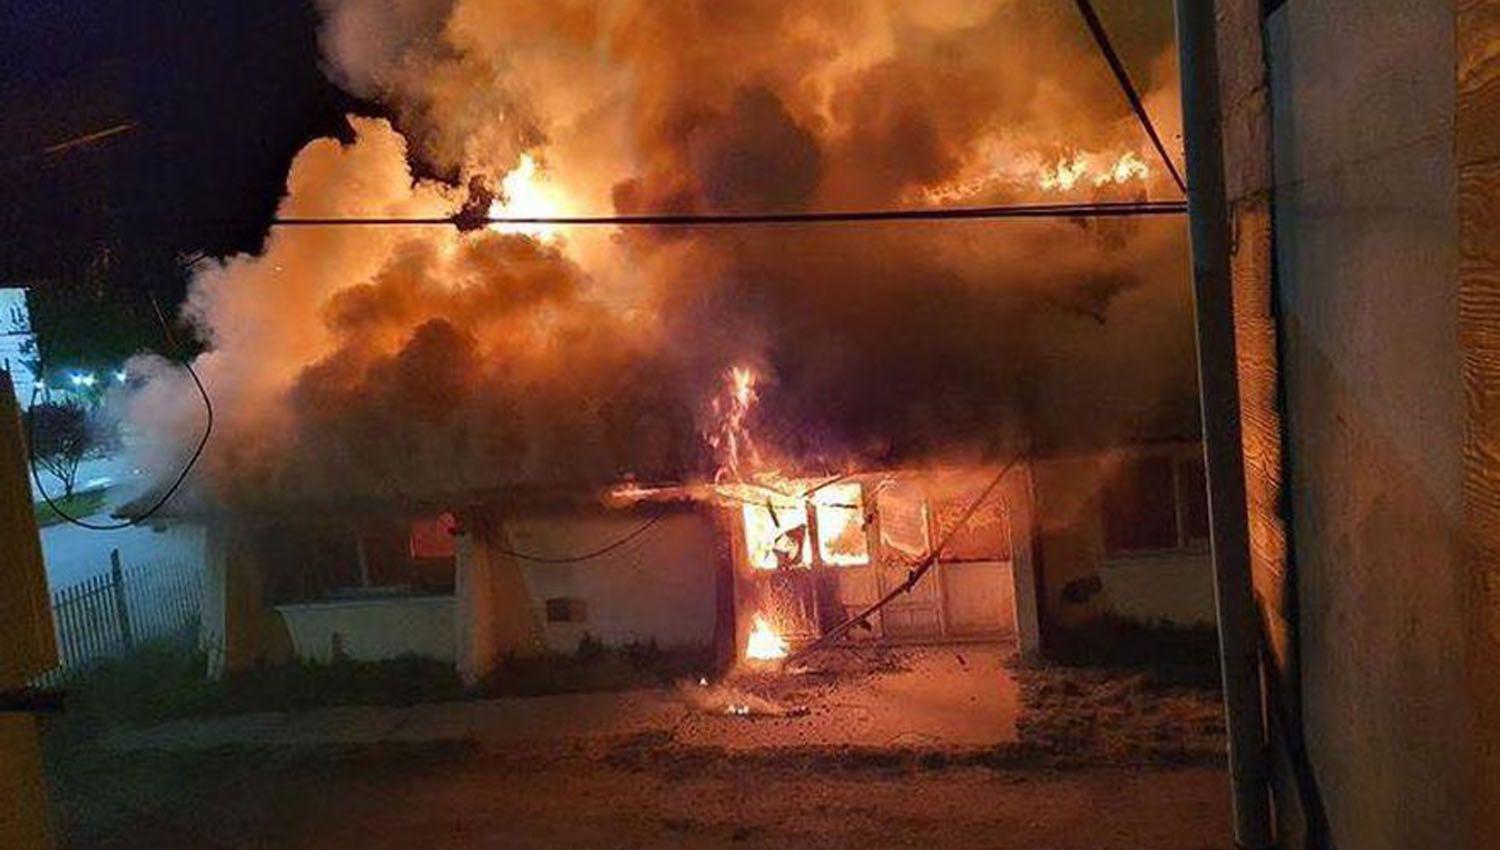 Incendiaron el edificio de un club en El Bolsoacuten y el gobierno de Riacuteo Negro pide refuerzo urgente de Gendarmeriacutea